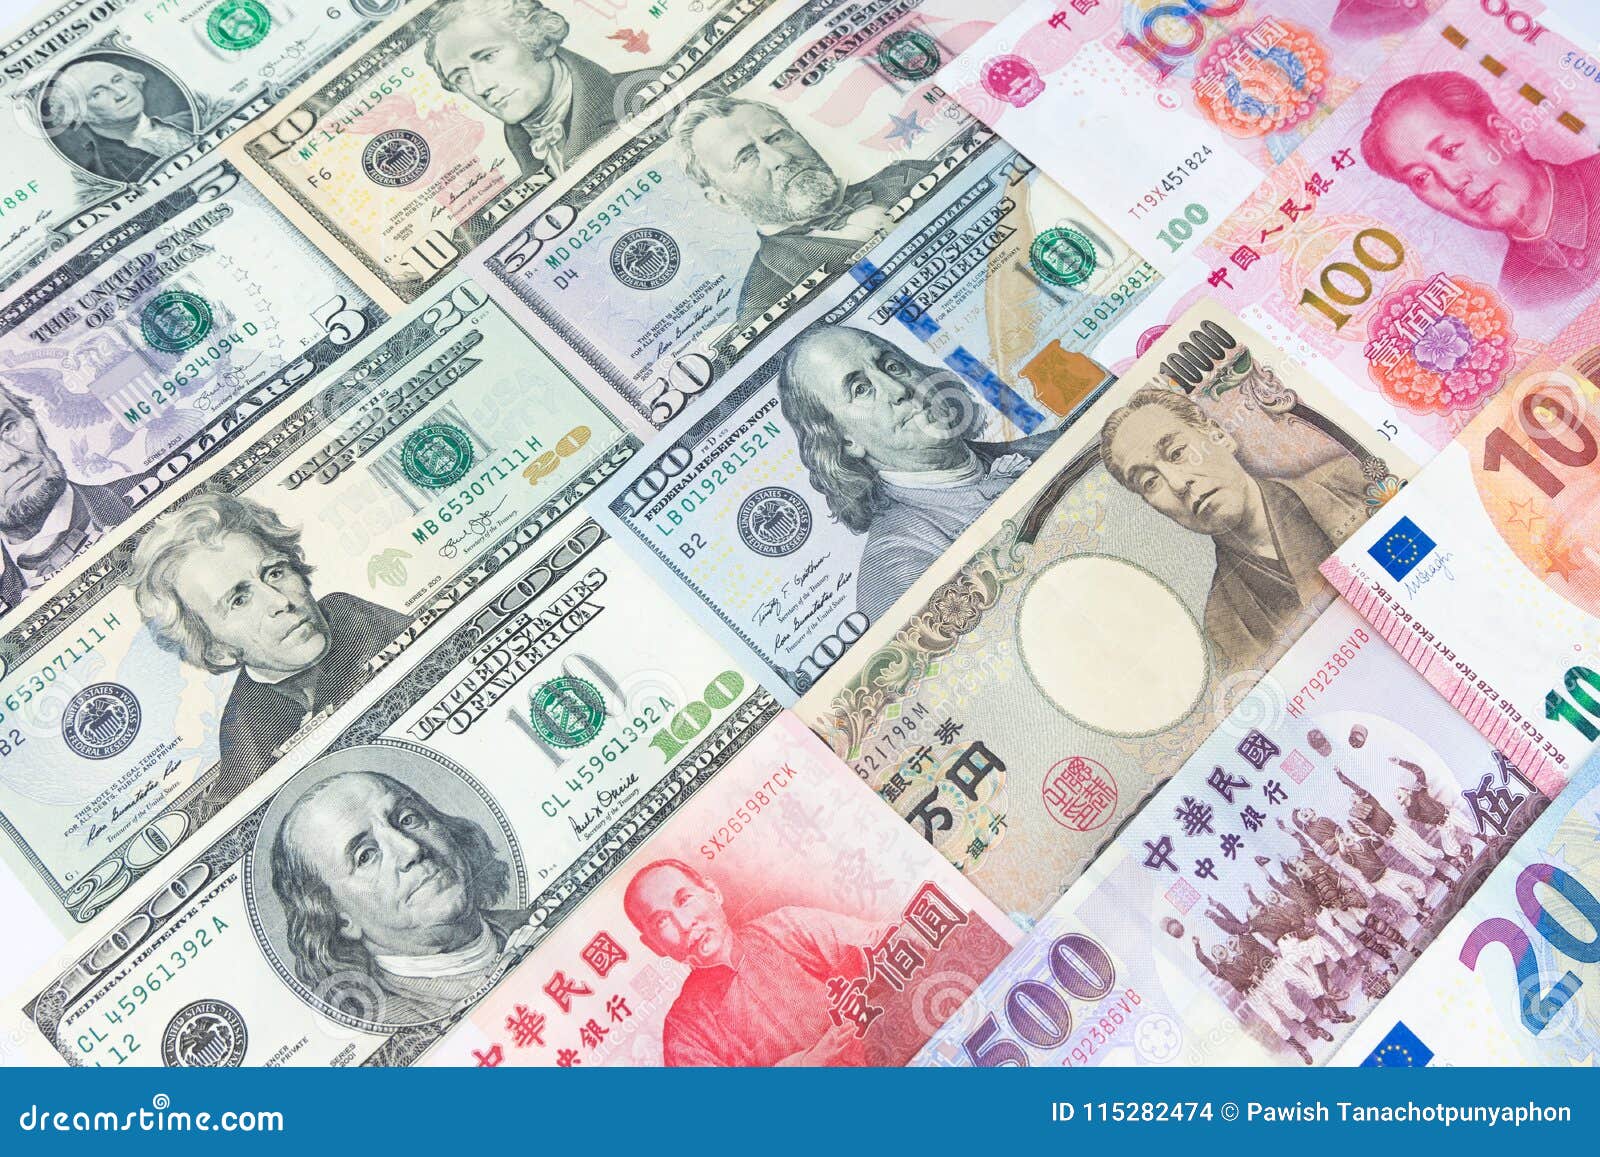 Обмен валюты из разные страны создание кошелька для биткоина